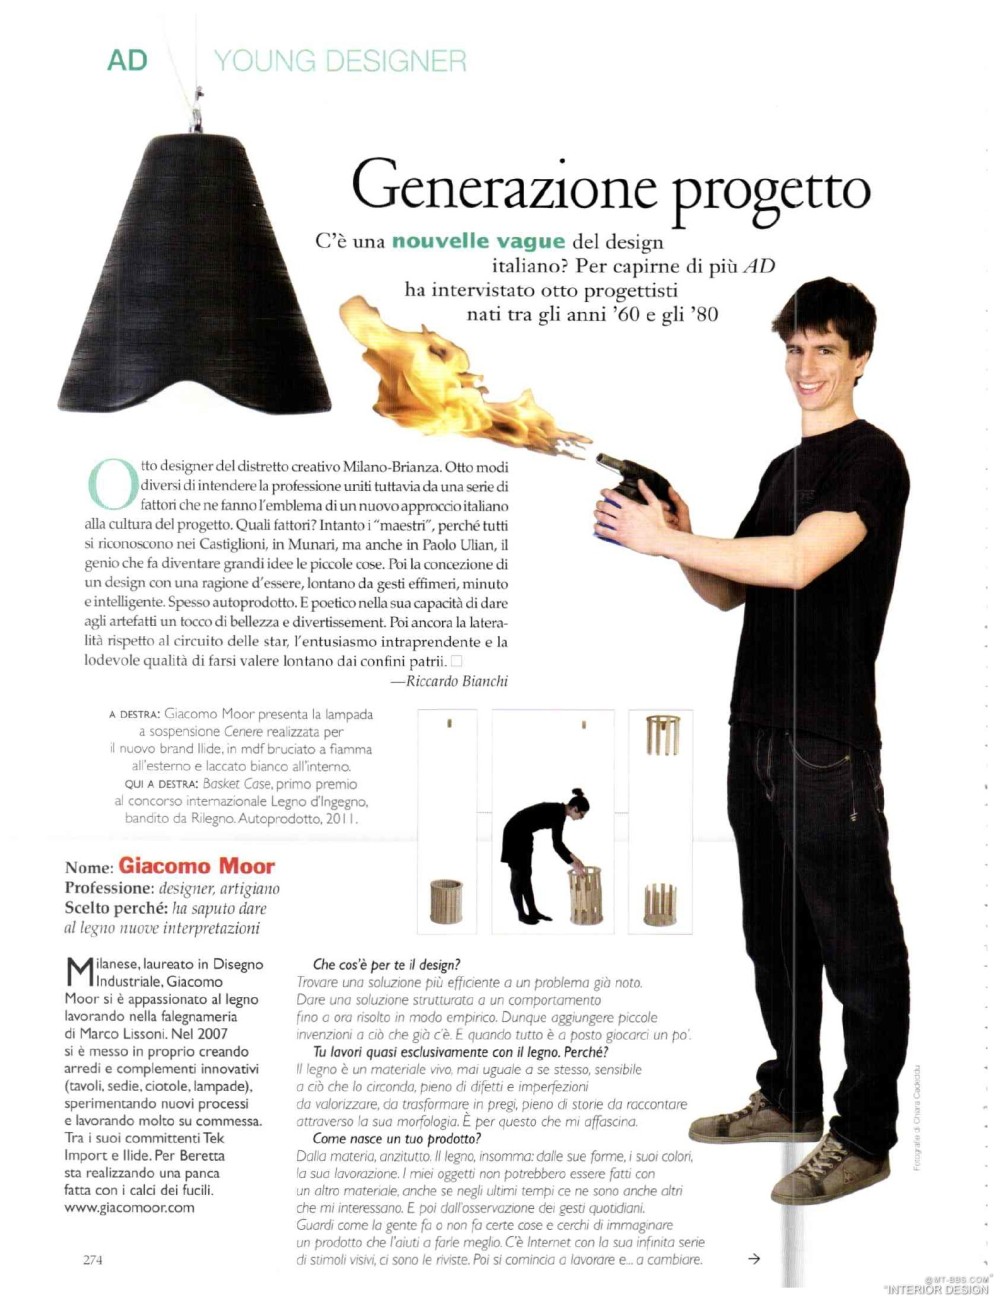 意大利AD 杂志 2012年全年JPG高清版本 全免（上传完毕）_0272.jpg